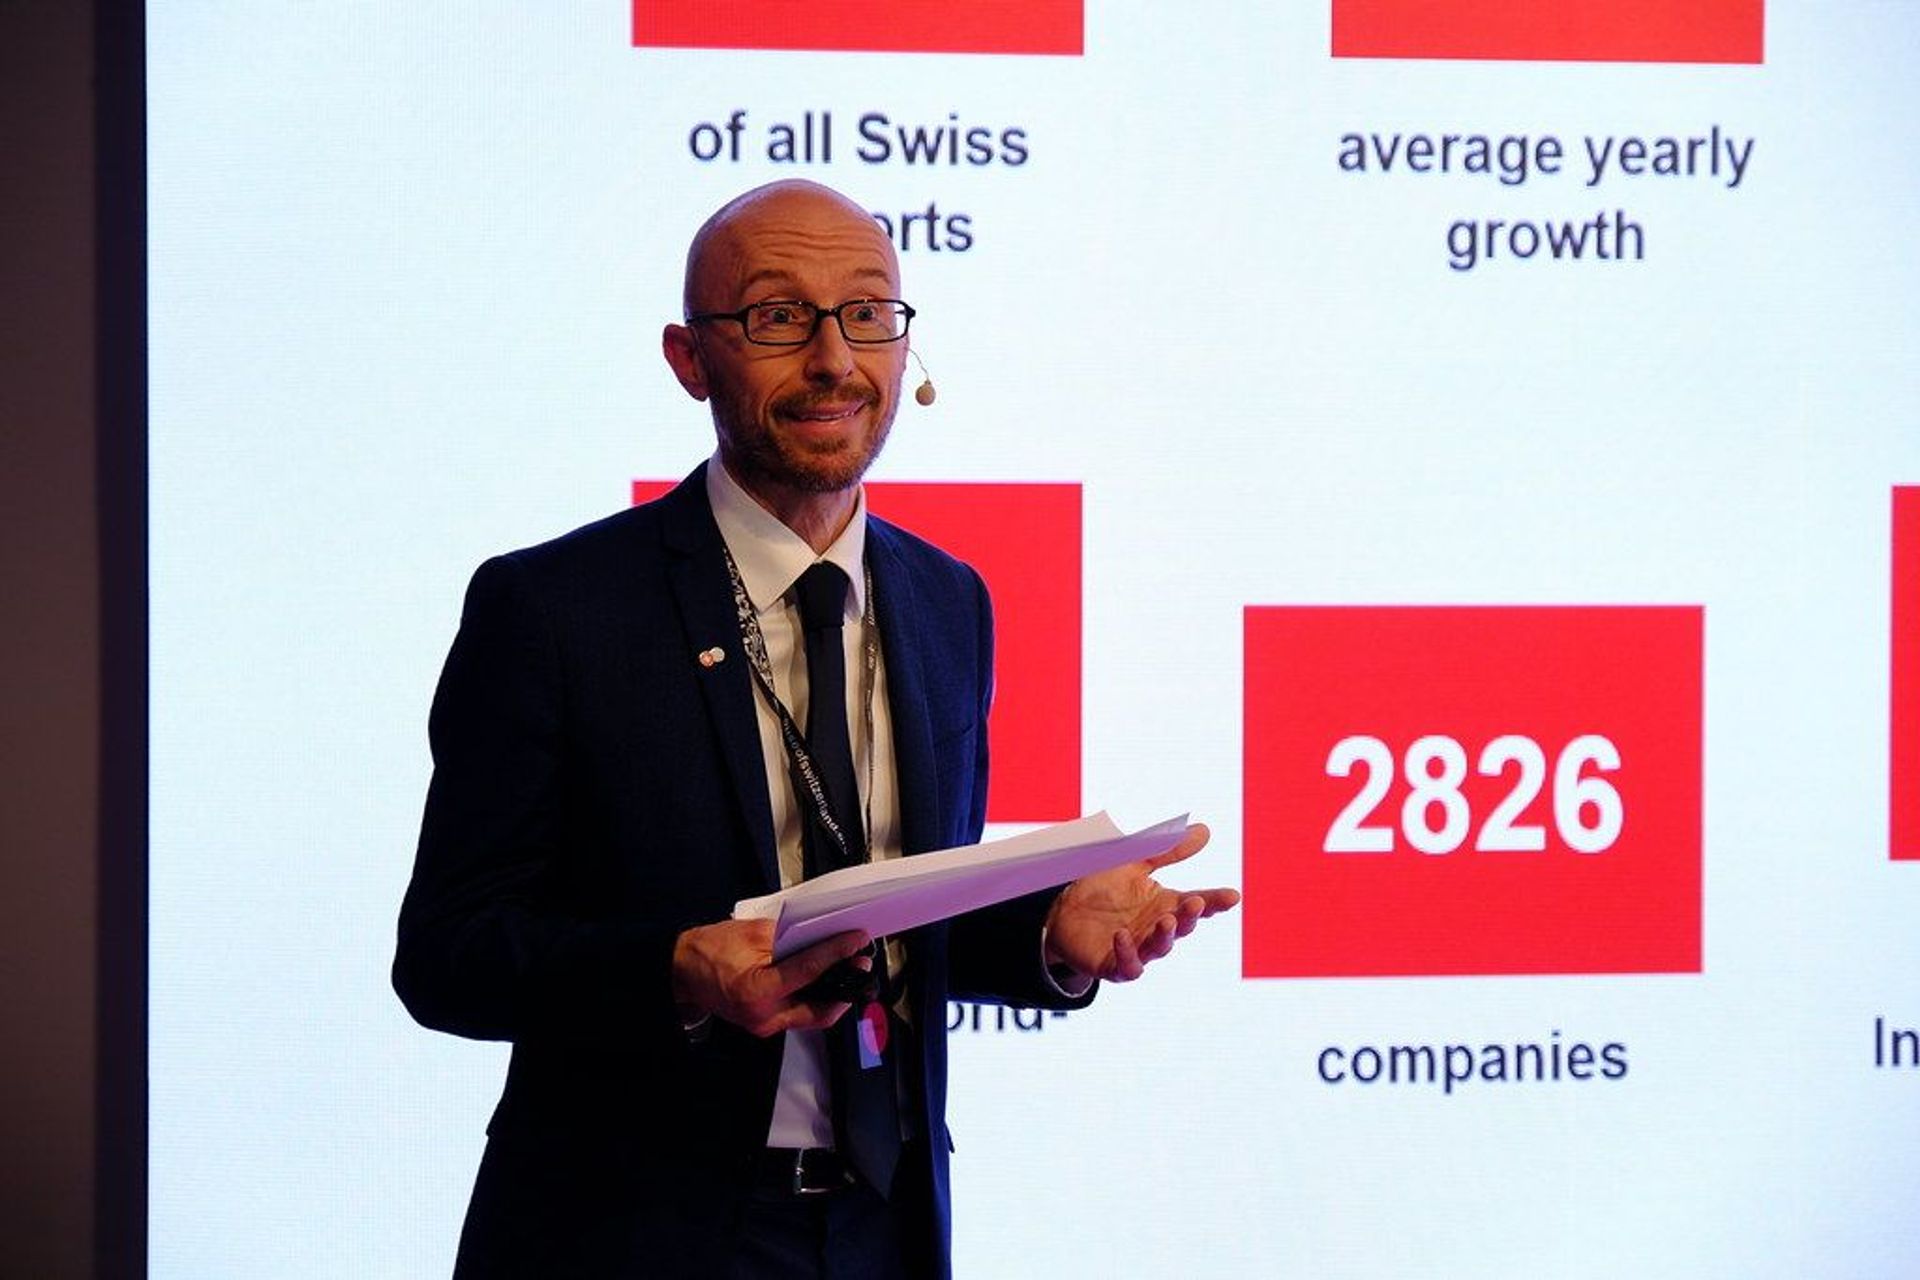 Stefan Zwicky, leder af Swiss Business Hub Italien, talte om introduktionen og temaet "Schweiz - dit sted for personlig medicin" ved arrangementet "Trends in Personalized Health" i Milano den 25. maj 2022